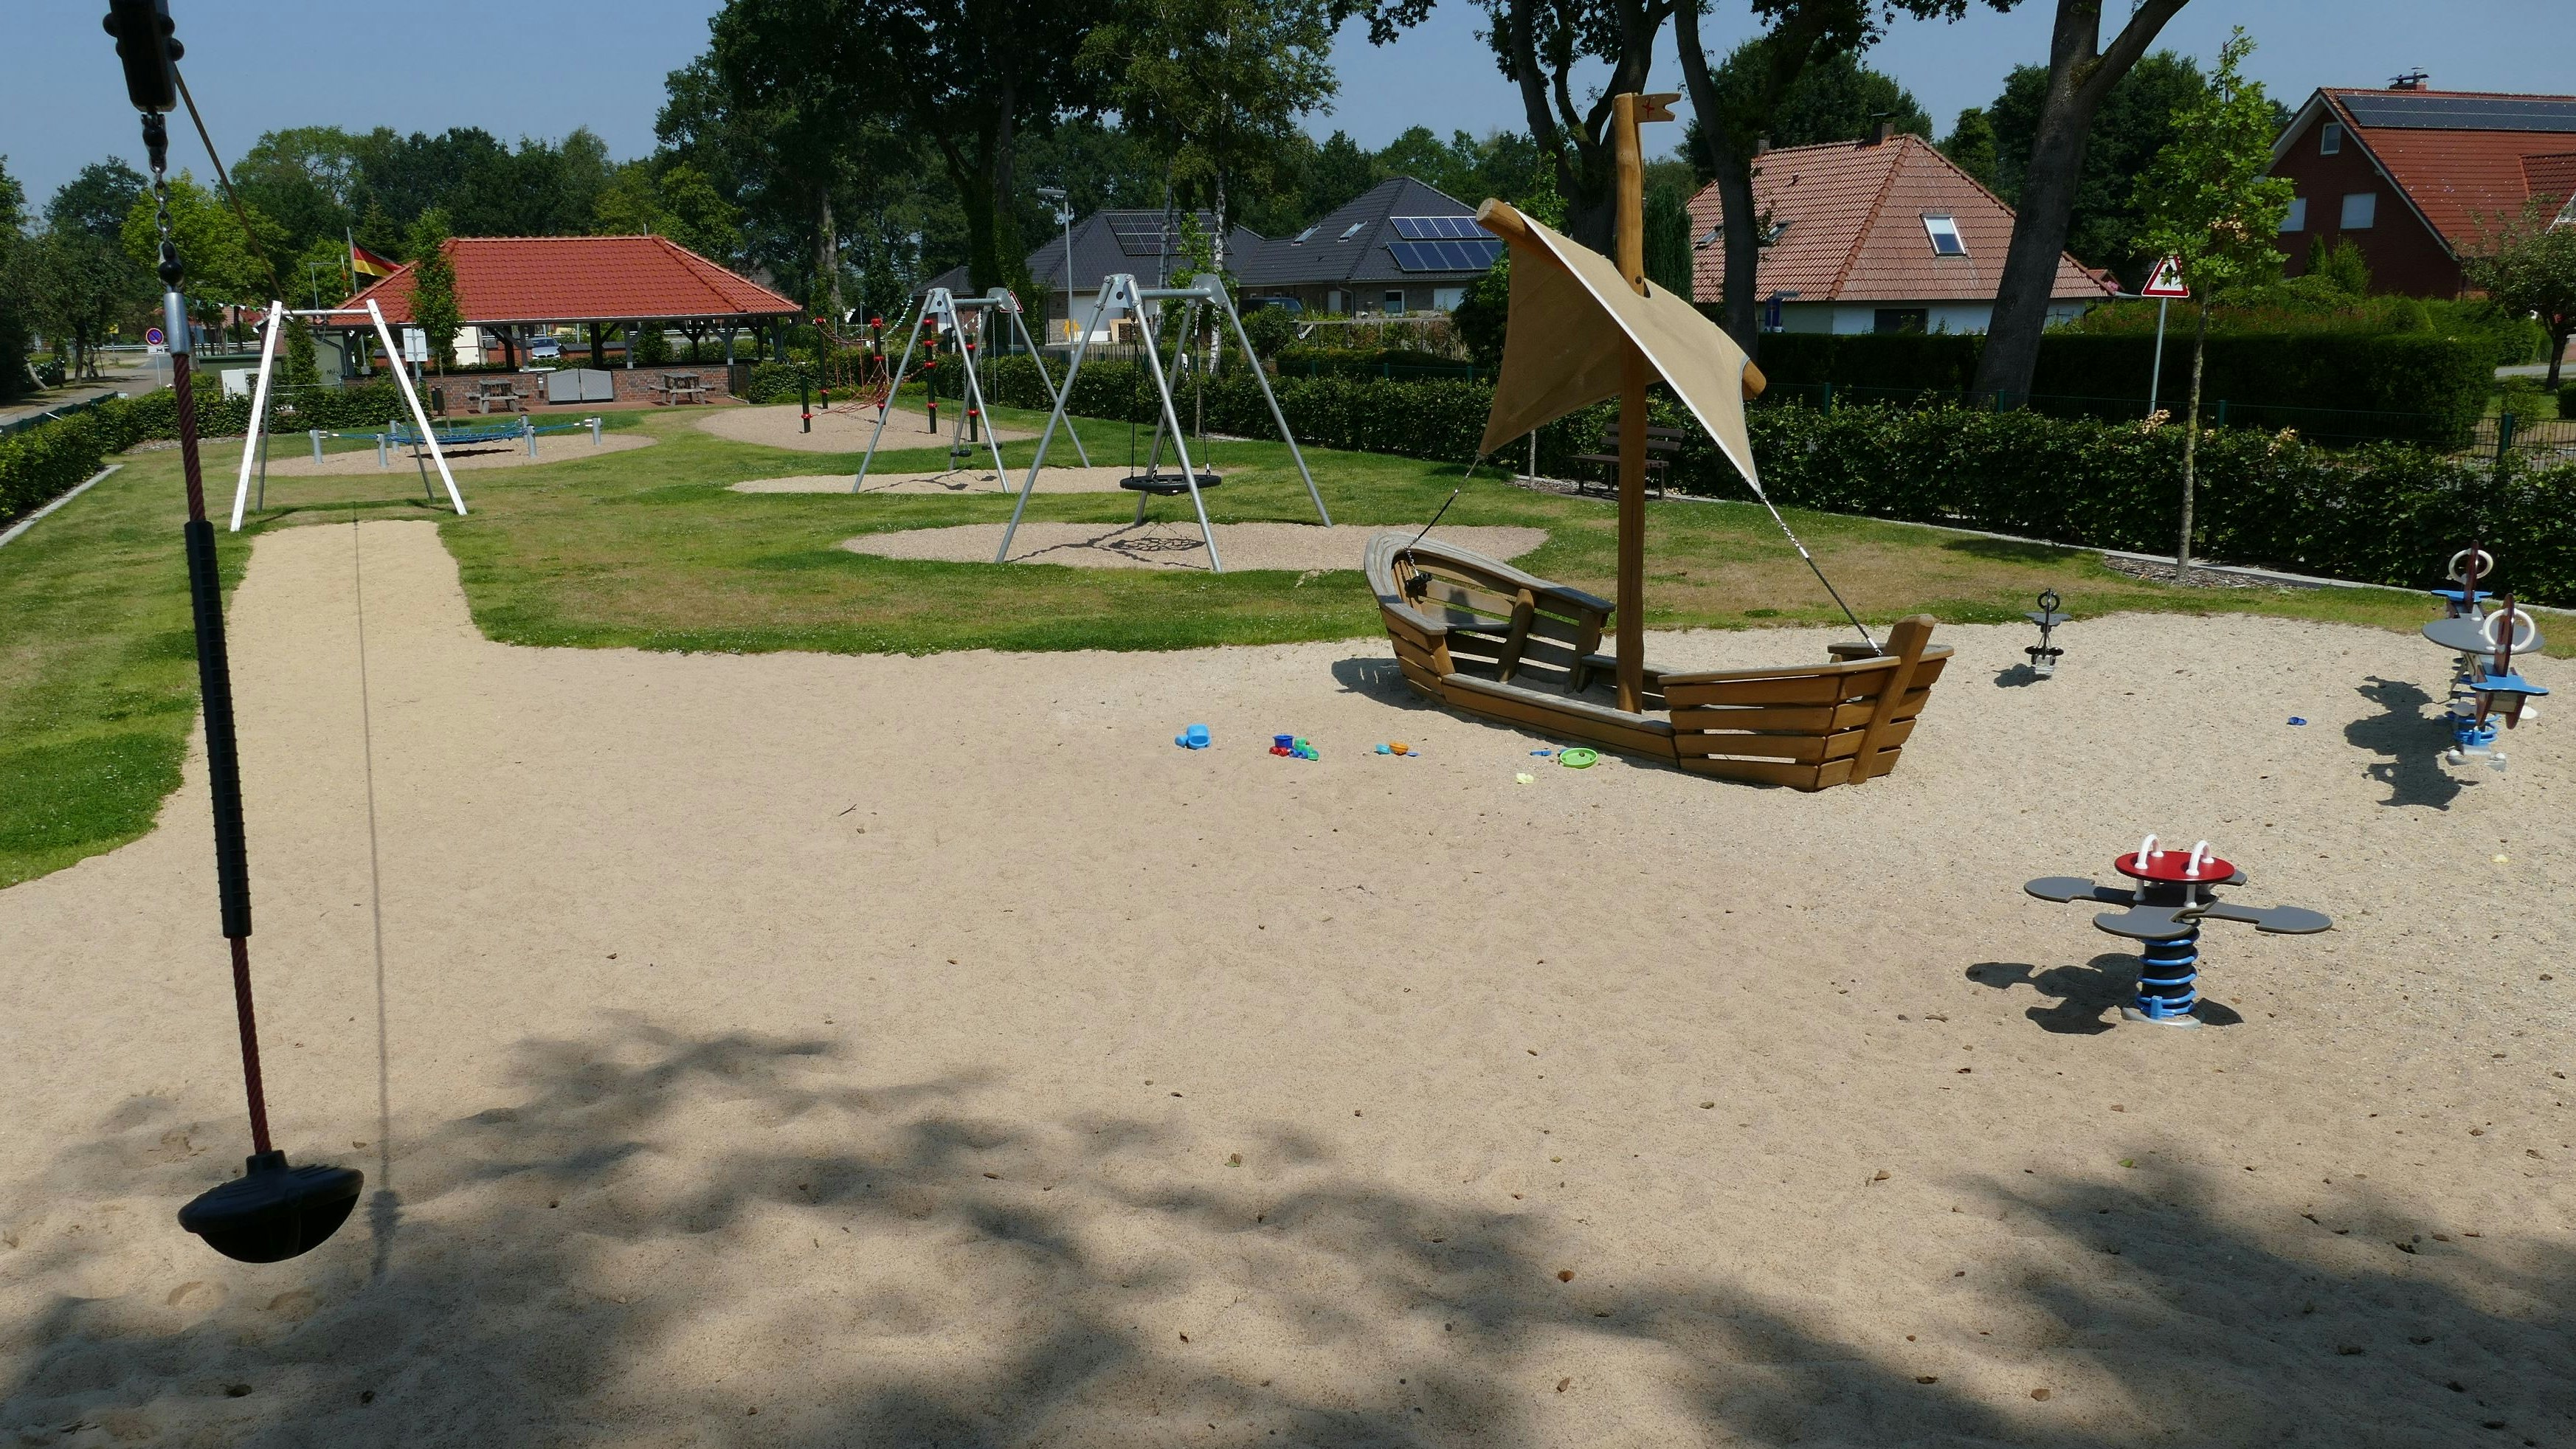 Große Auswahl: Mit Seilbahn, Trampolin und Kletternetz ist der Spielplatz in Kamperfehn gut ausgestattet. Hinzu kommen Tischtennisplatte, Kicker und jede Menge Sand.&nbsp; Foto: Stix